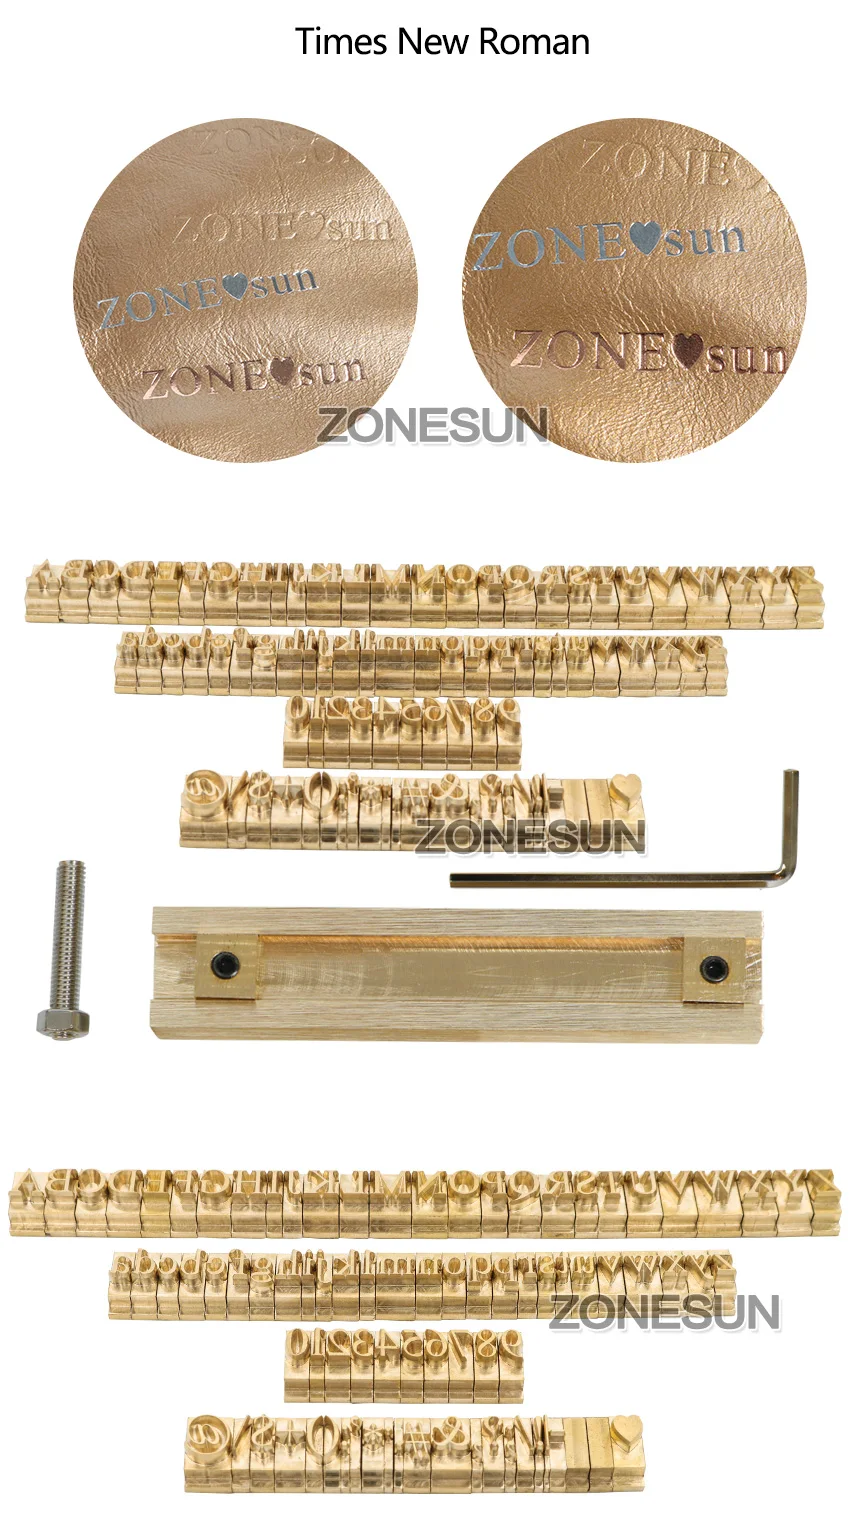 ZONESUN пользовательские латунный штамп DIY металлический алфавит, буквы, цифры, символ, кожа штампы для штамповки тяга инструмент бренд железная форма